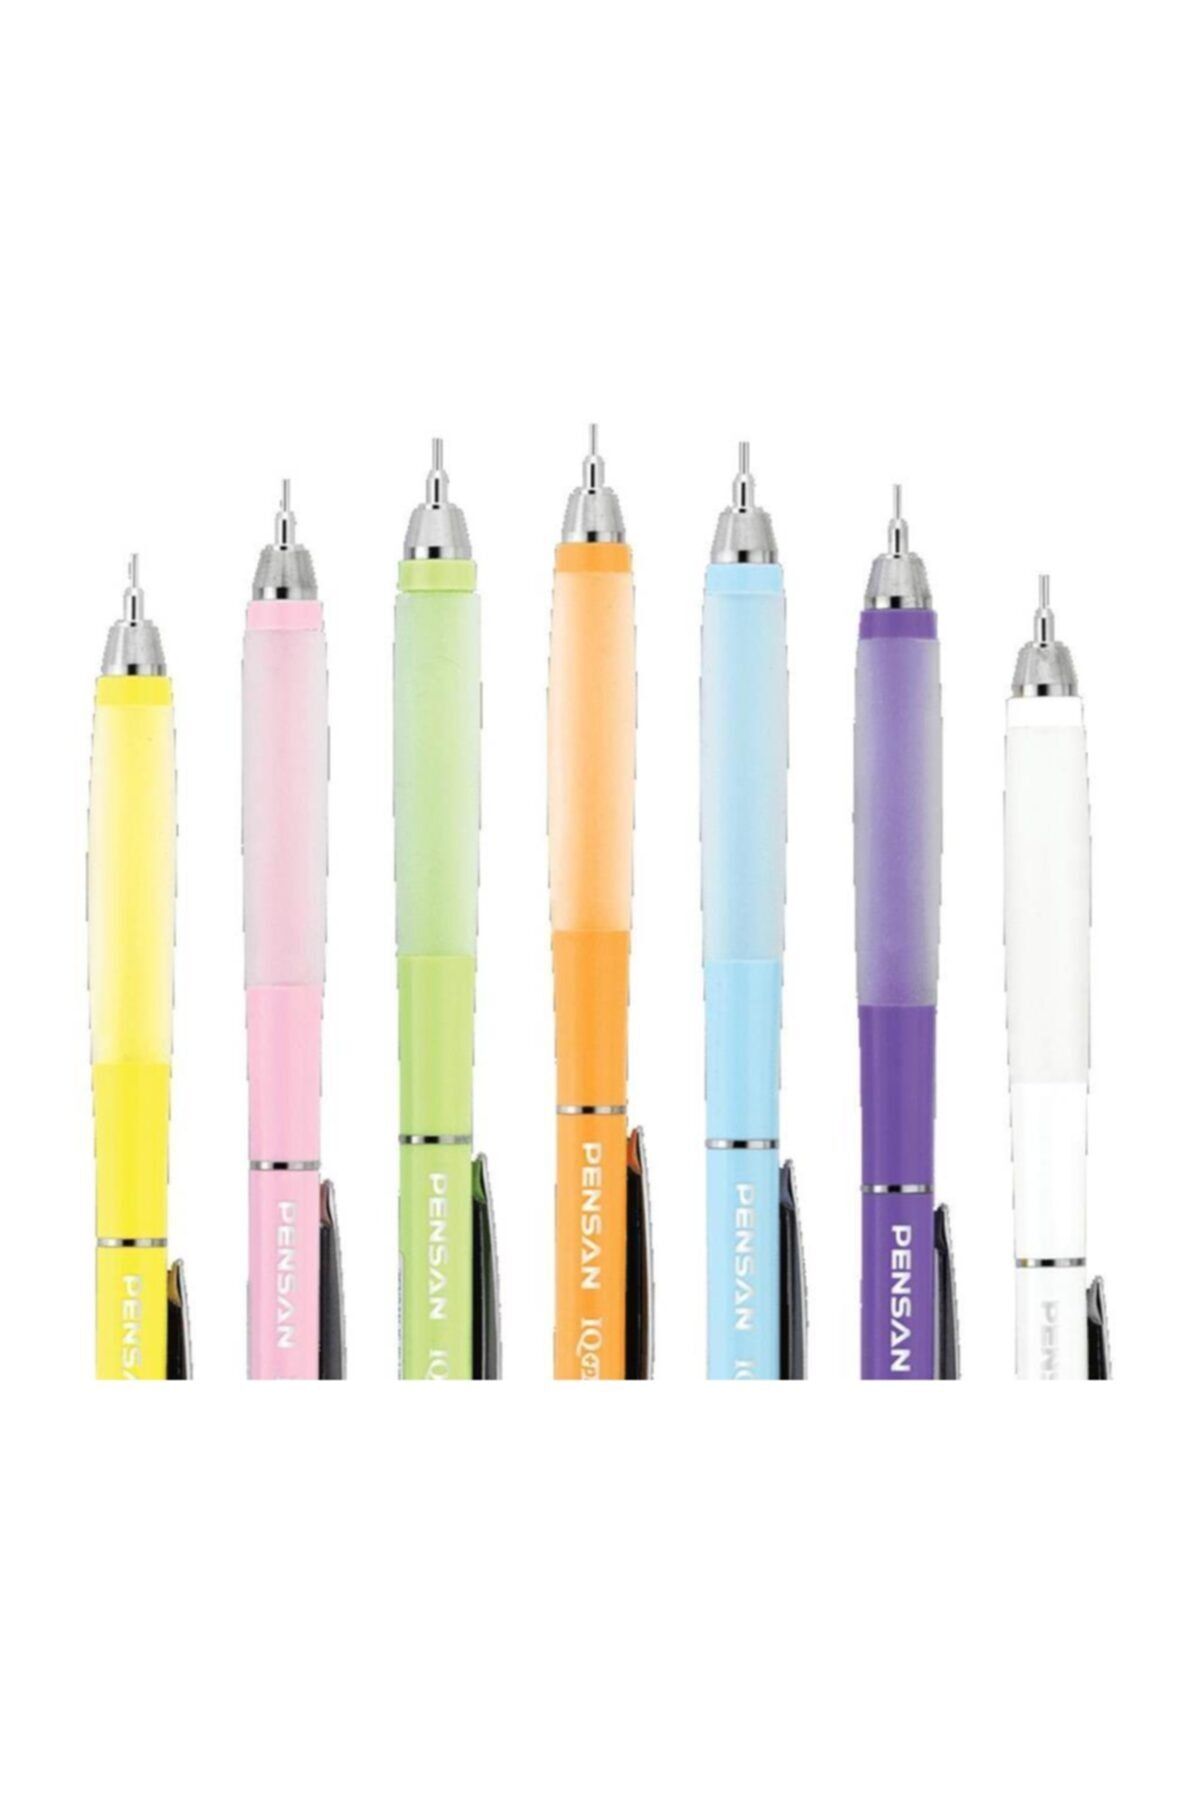 Pensan Versatil Kalem Iq Plus 0.7 Mm Tekli Renk Seçimi Yapılamaz Asorti (1 Adet)